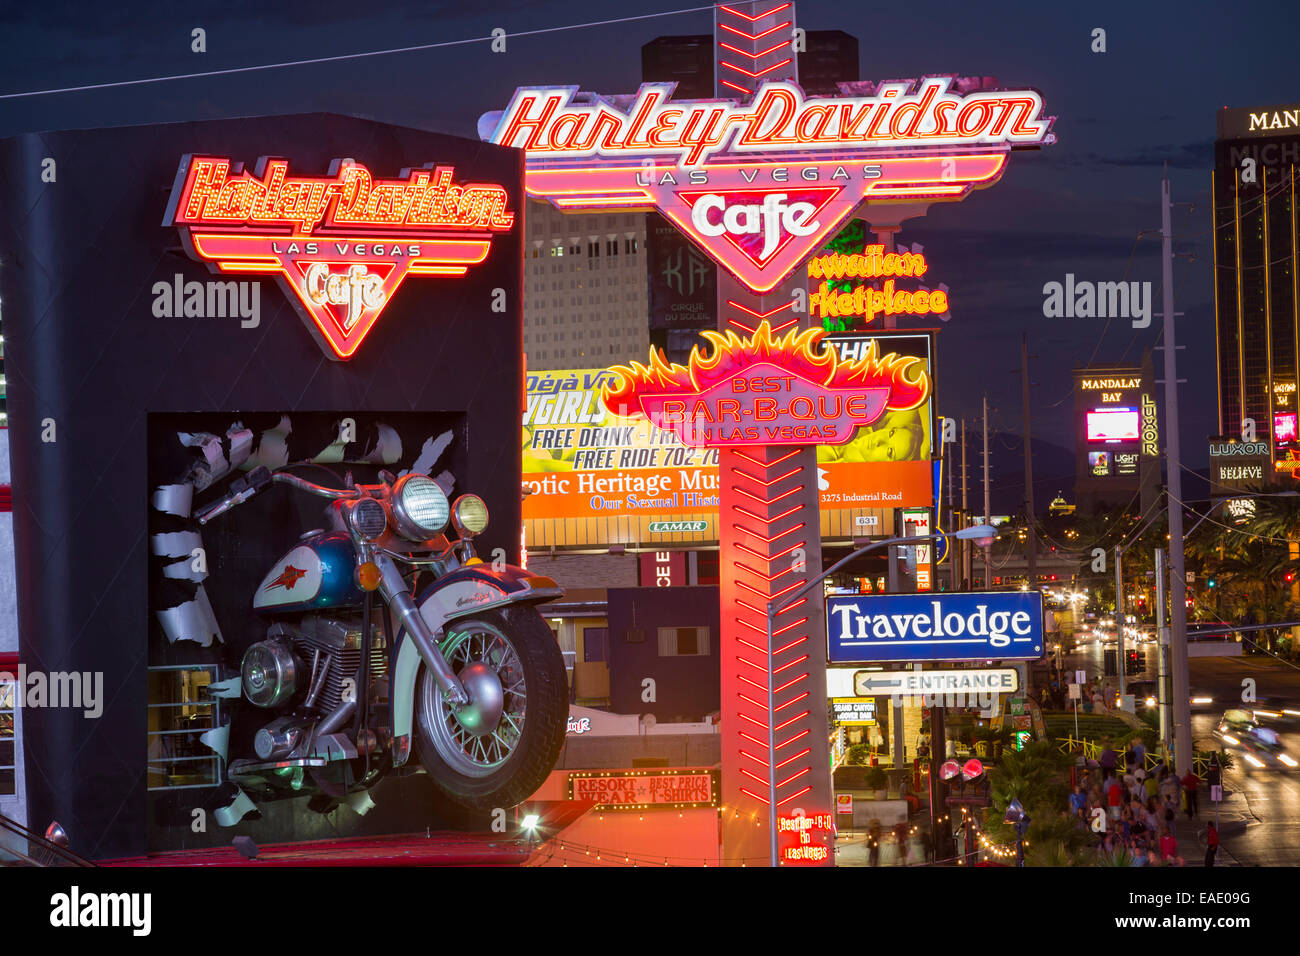 La Harley Davidson Cafe sur Las Vegas Boulevard au crépuscule, Las Vegas, Nevada, USA, probablement la plus insoutenable de la ville dans le monde, il utilise de grandes quantités d'eau au milieu d'un désert et de vastes quantités d'énergie pour alimenter cette plus prodigue des villes. Banque D'Images